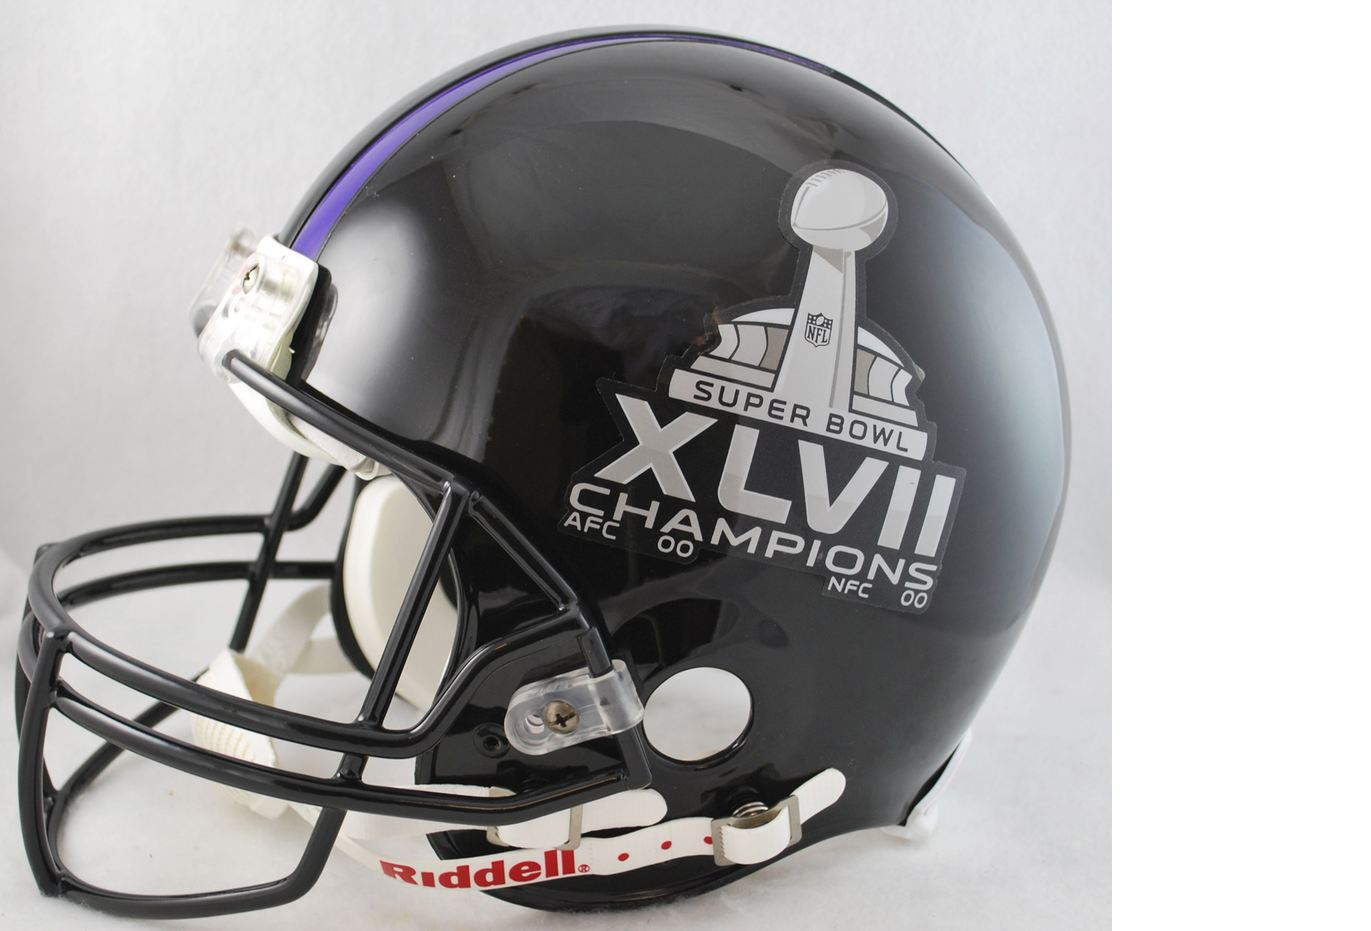 Super Bowl 47 Football Helmet Baltimore Ravens Champs